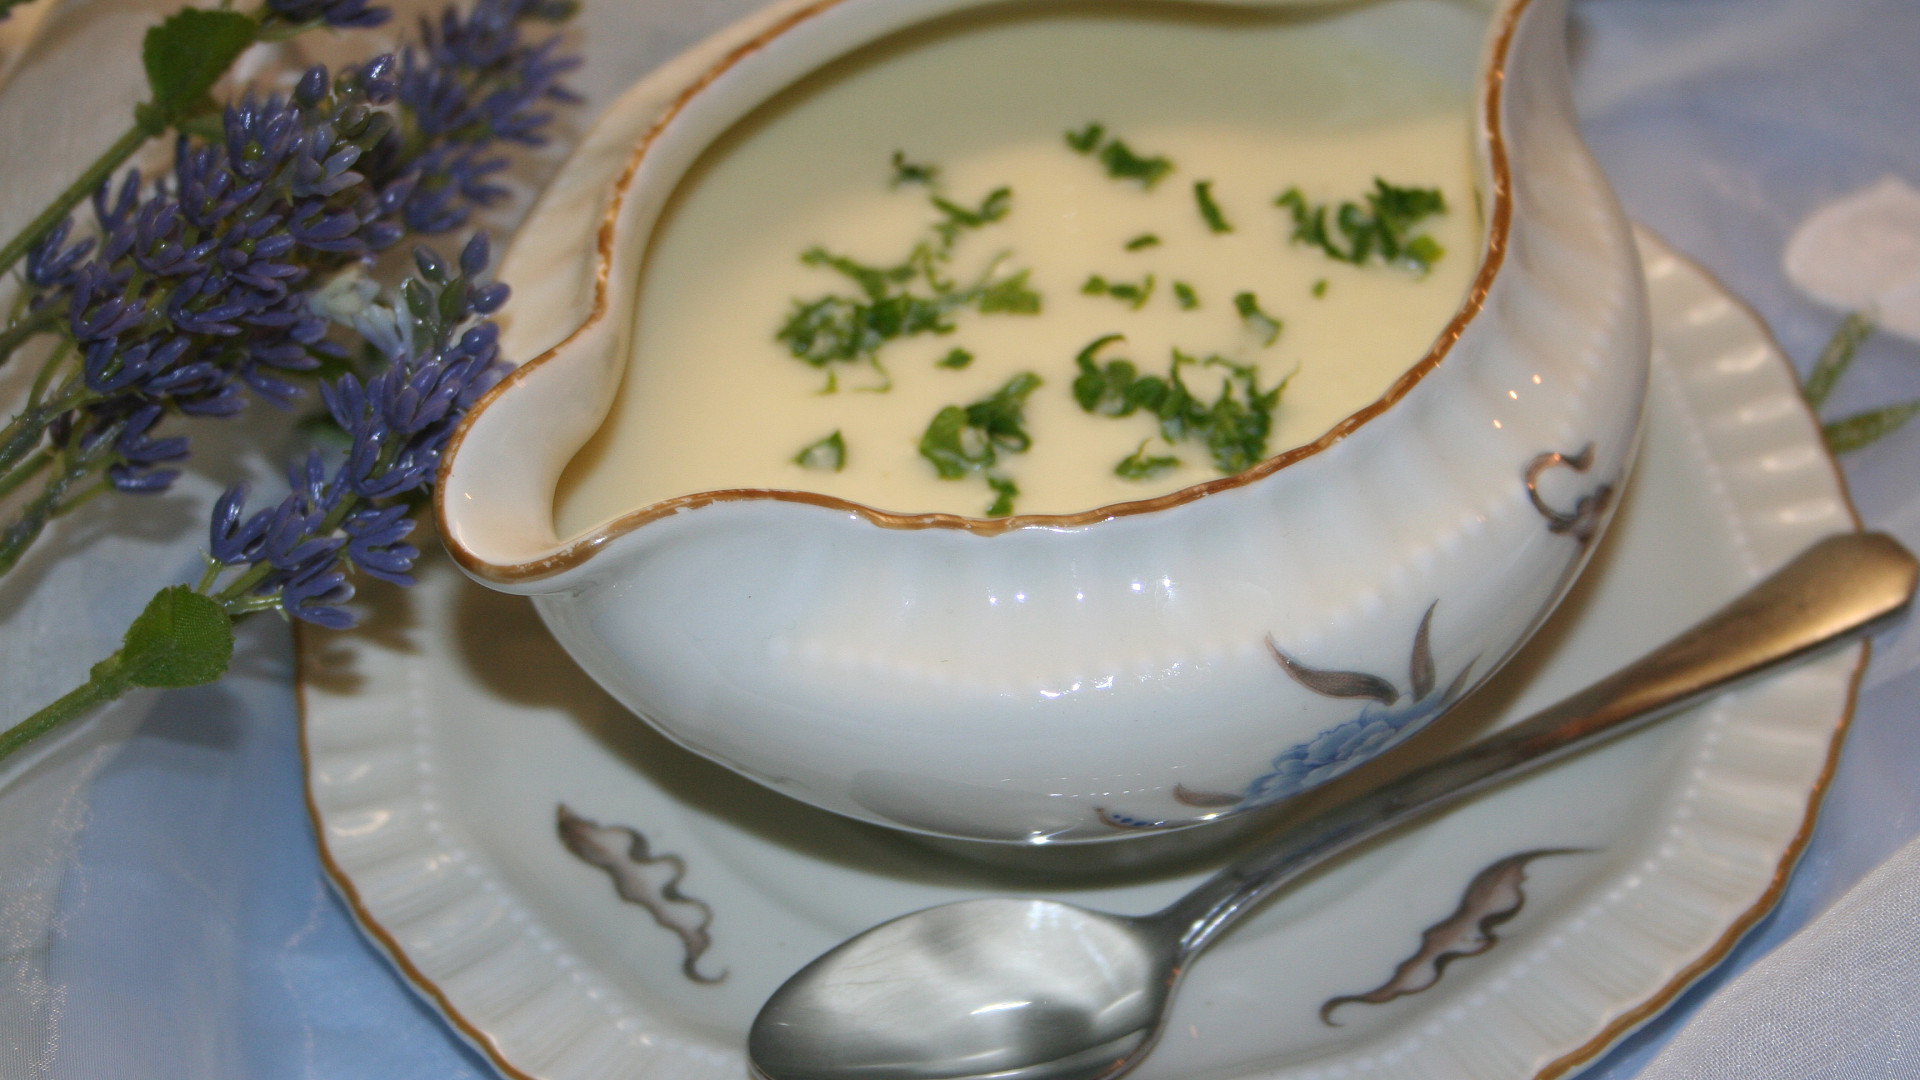 Tradiční francouzská polévka Vichyssoise